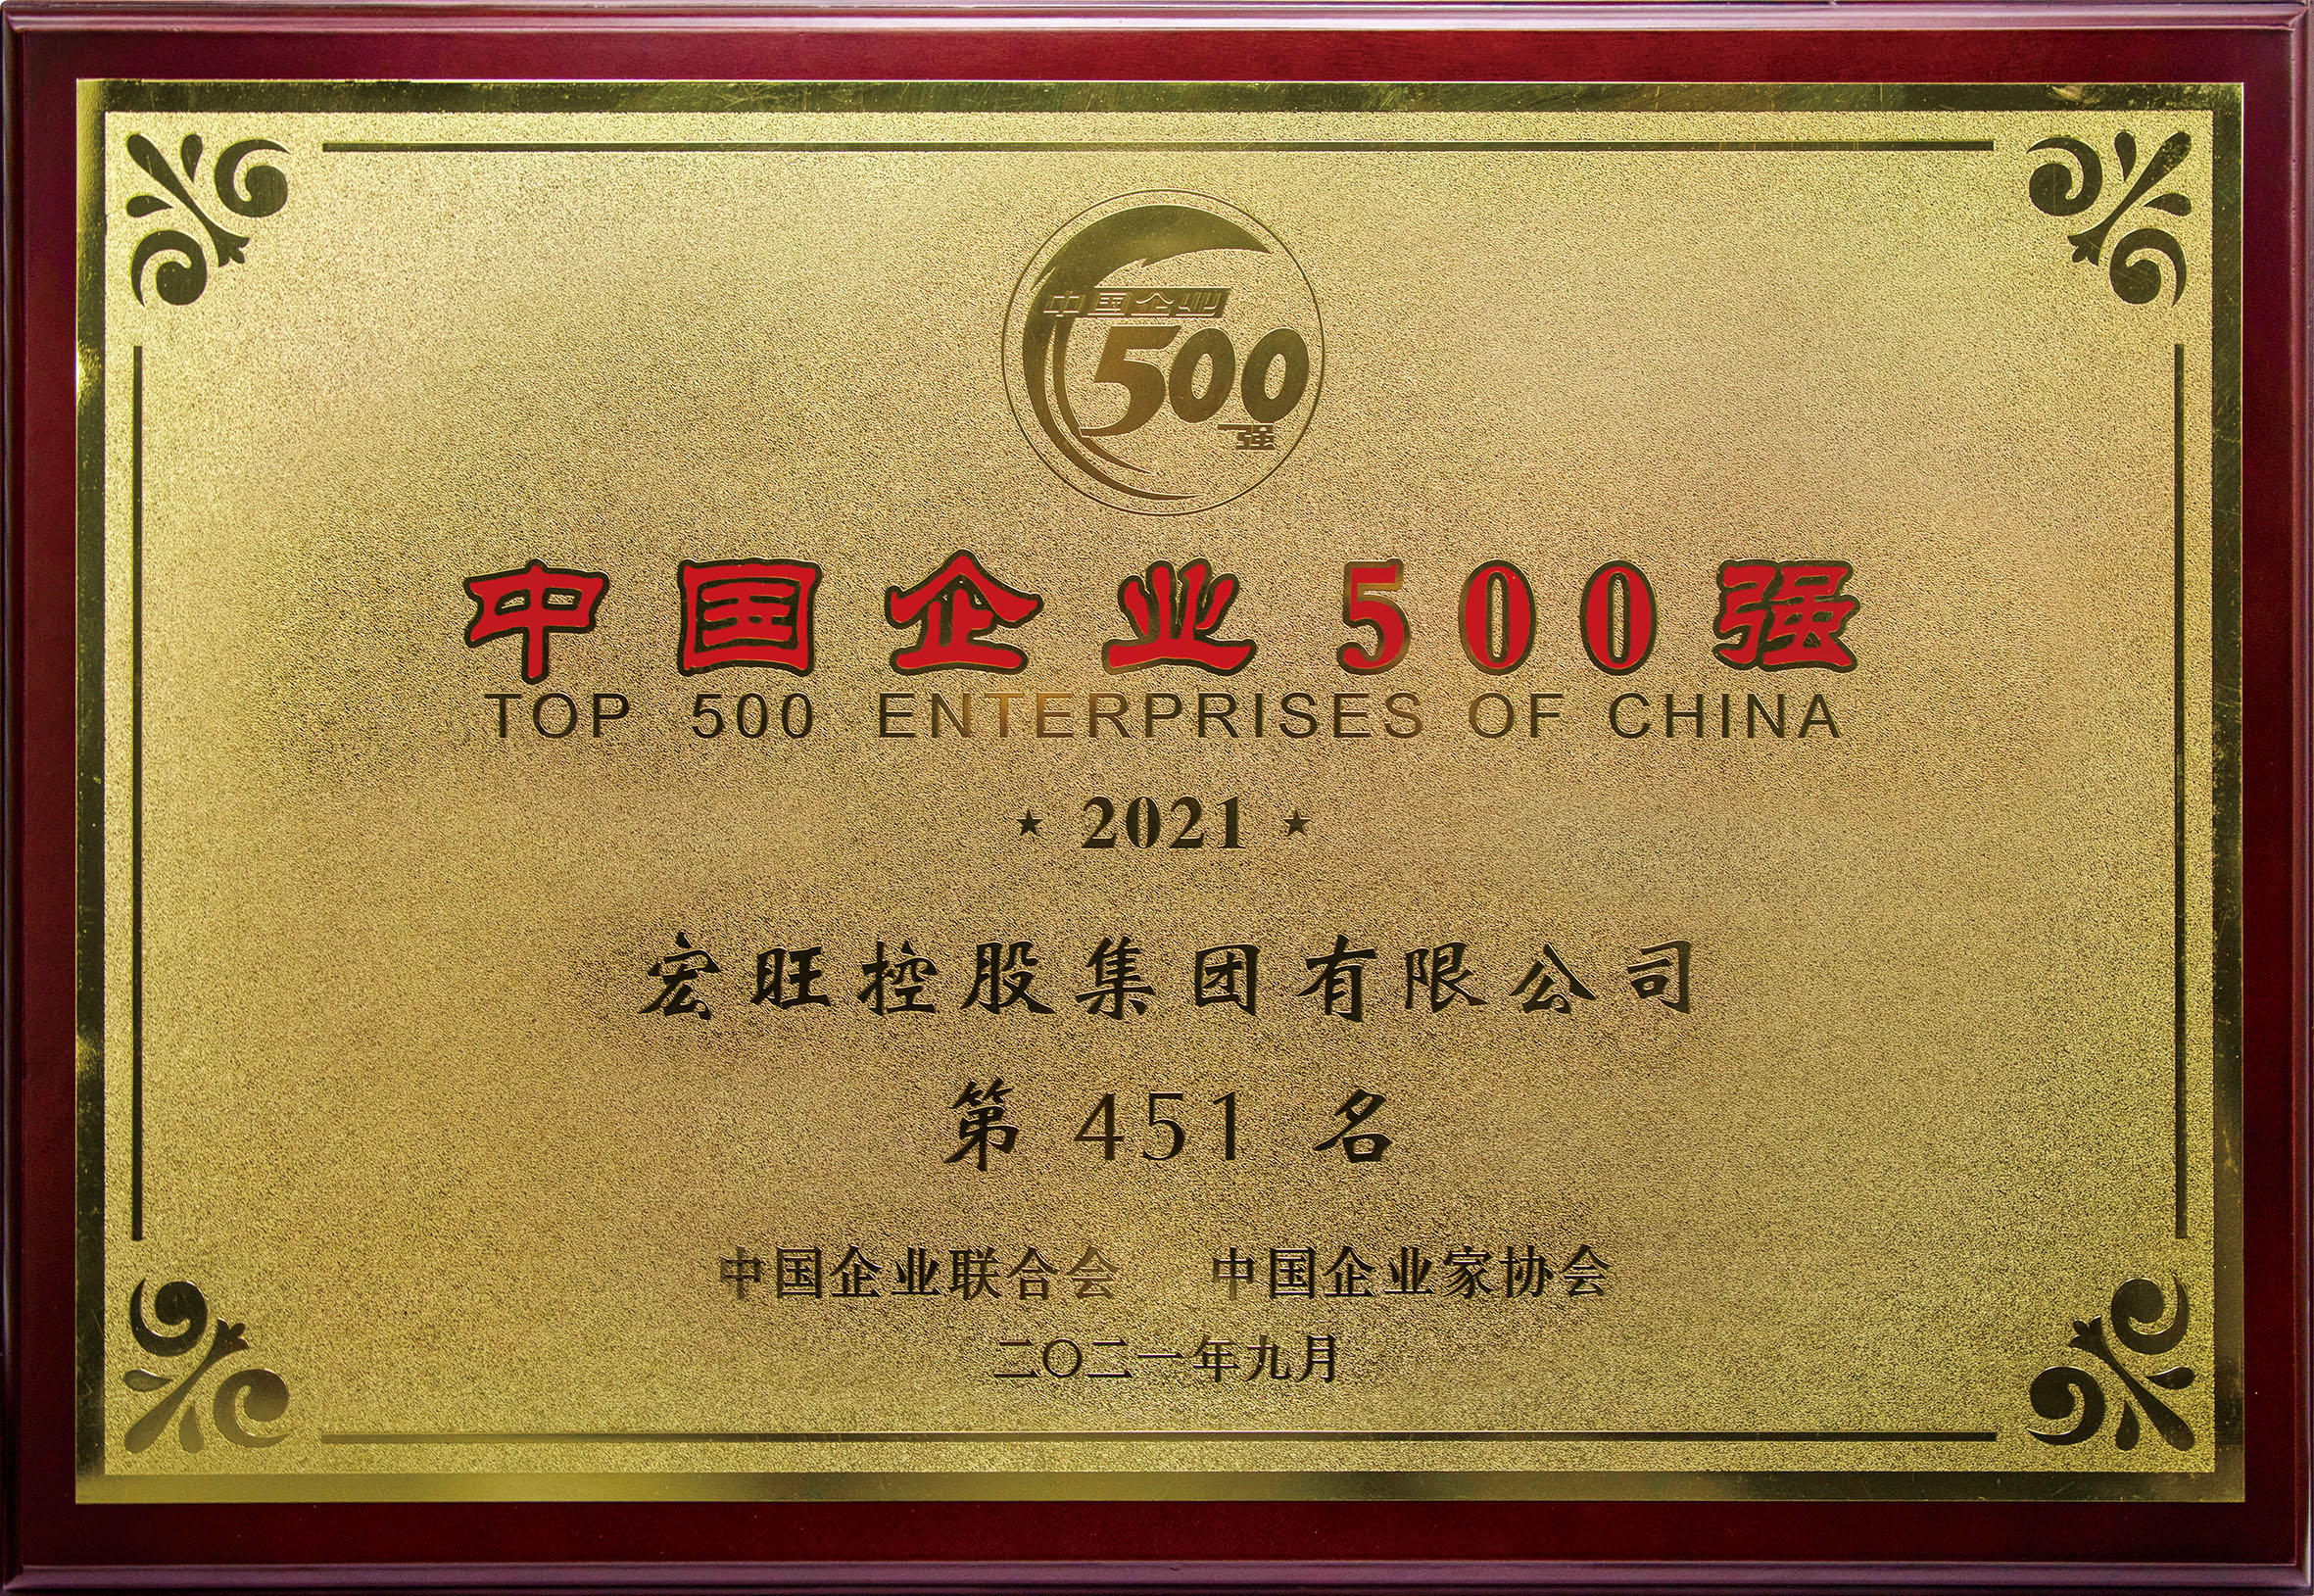 2021年9月香港精英论坛三中三位列“2021中国企业500强”第451位，位列“